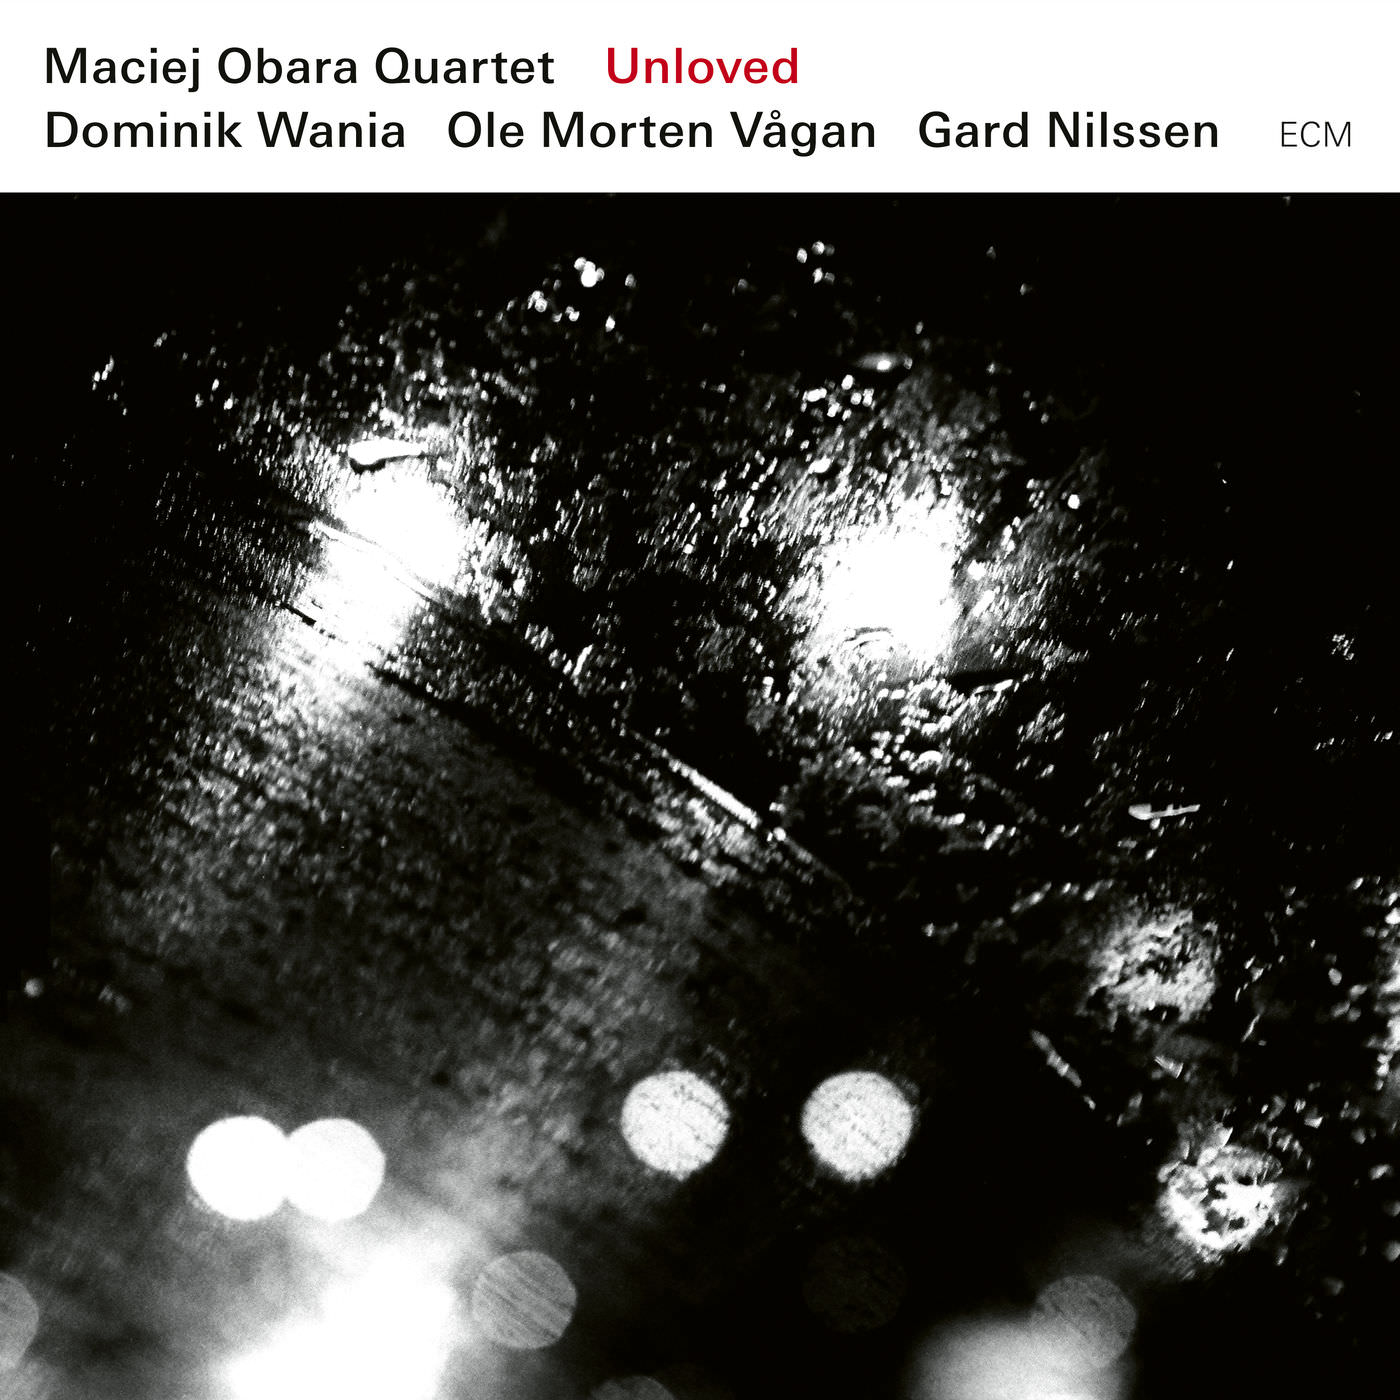 Maciej Obara Quartet - Unloved (2017) [Qobuz FLAC 24bit/96kHz]